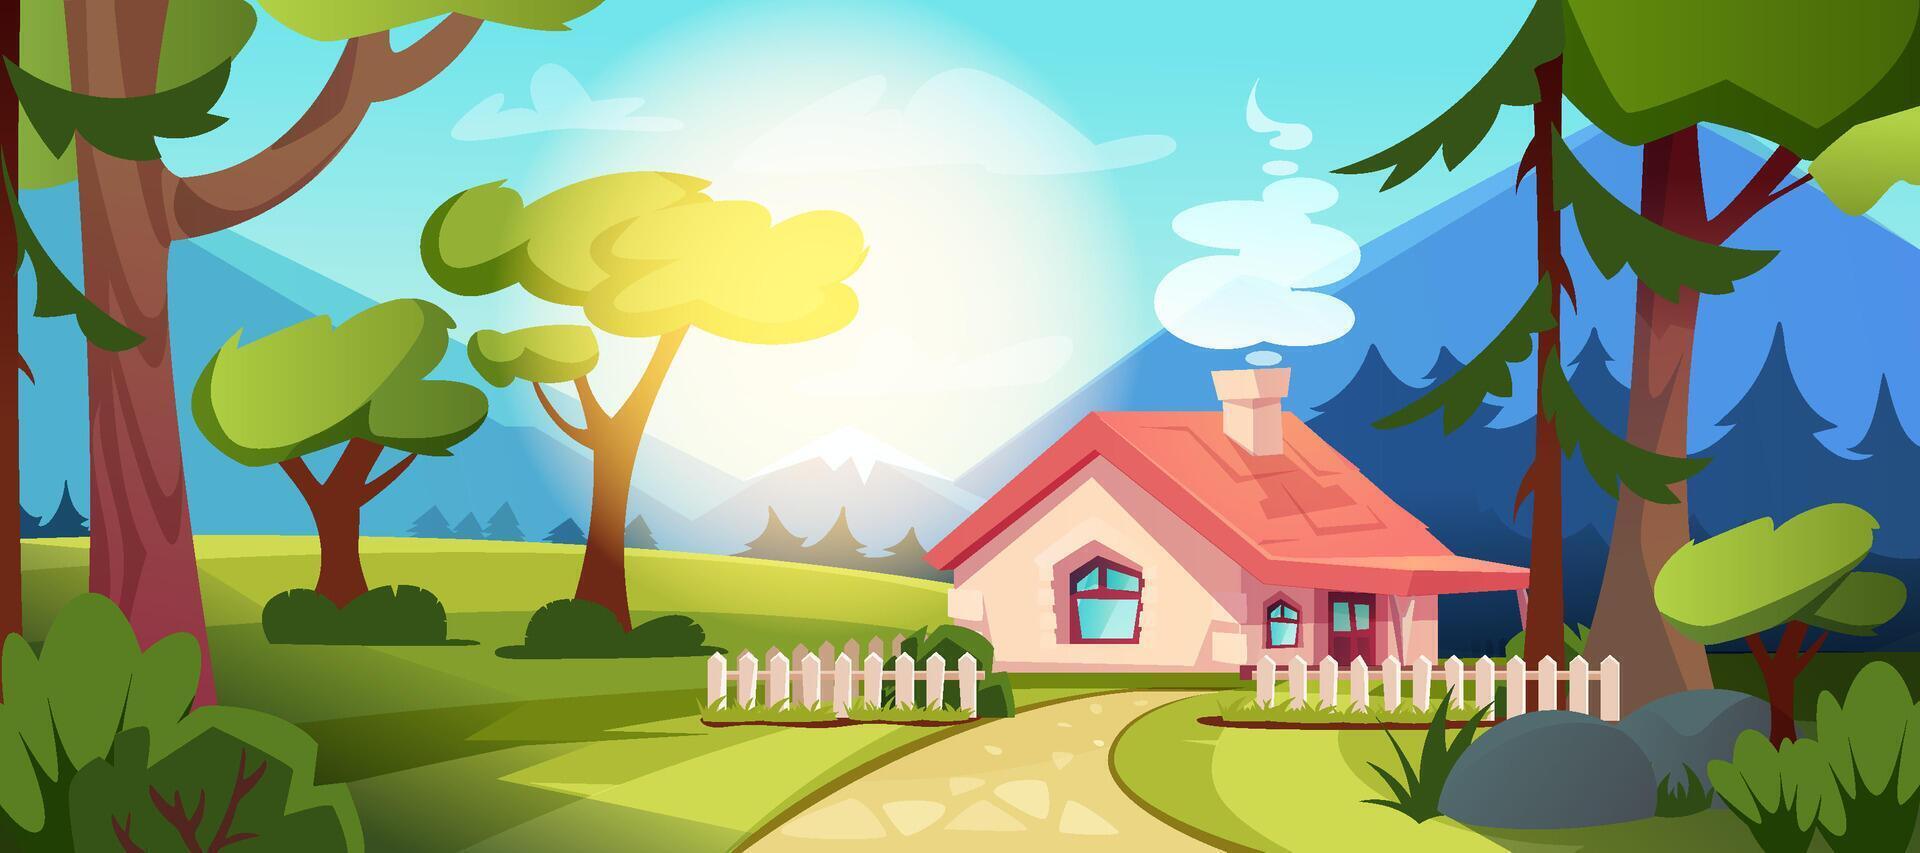 land huis in Woud. tekenfilm illustratie van zomer landschap van dorp met schutting, pad en bergen. boswachter huisje met groen gazon, bomen, struiken, heuvels en zon licht. vector